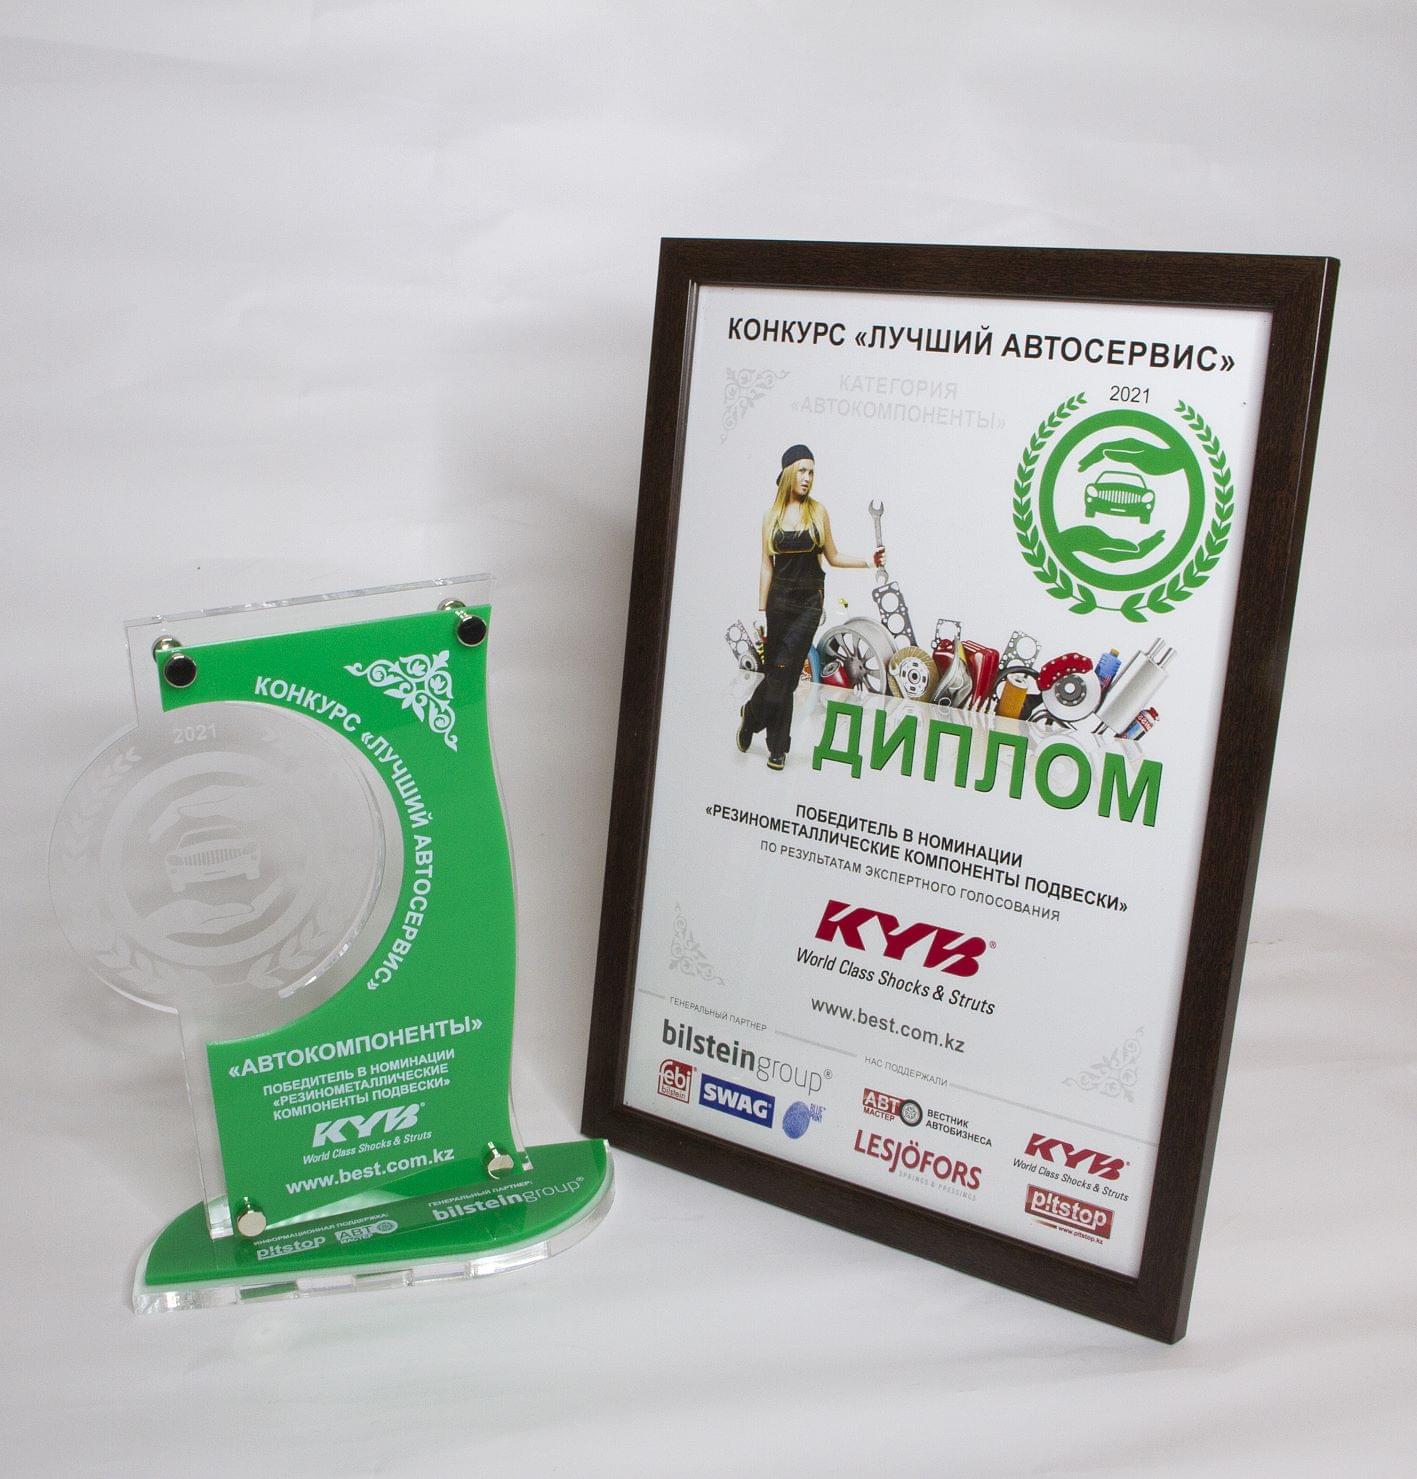 KYB - победитель с номинации "Резинометаллические компоненты подвески"